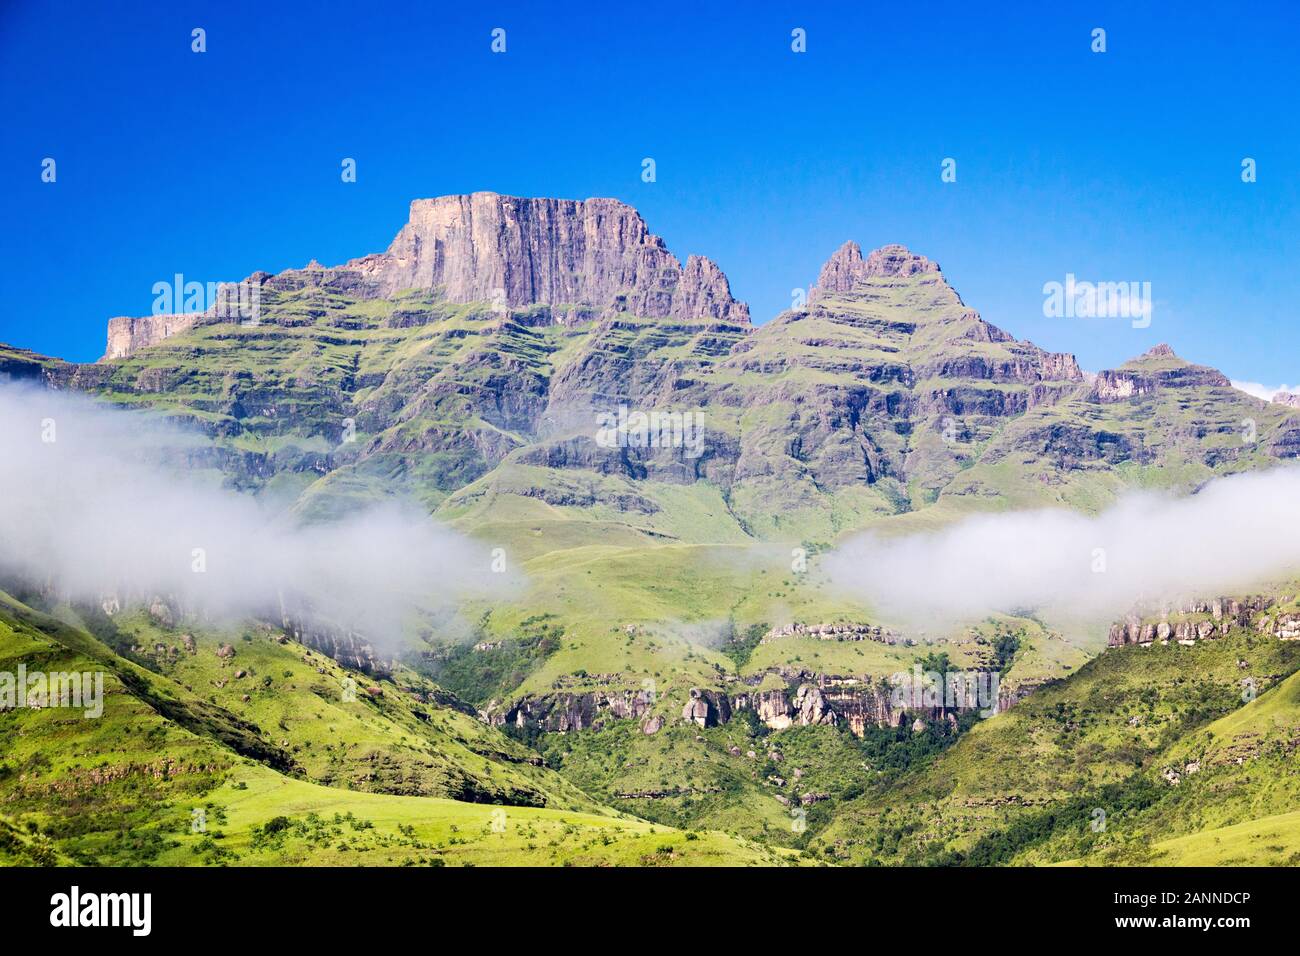 Cathkin Peak, Monk's Cowl et Champagne Château sur une journée ensoleillée et un ciel bleu, Drakensberg, Afrique du Sud Banque D'Images